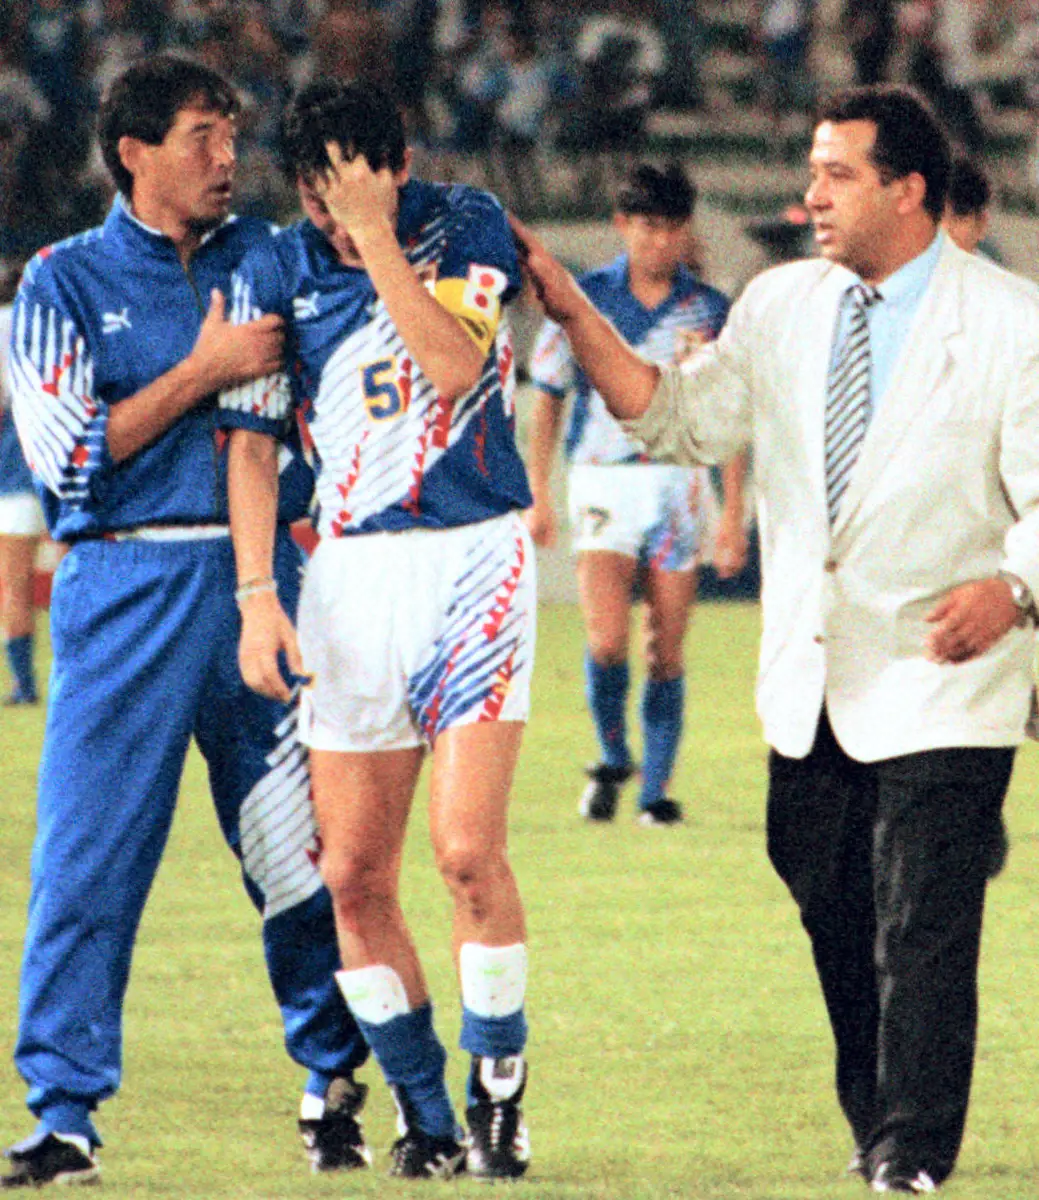 93年アジア最終予選でＷ杯出場を逃し、落胆する日本代表の柱谷哲二（右はオフト監督）。日本ではこの出来事が「ドーハの悲劇」として報じられた